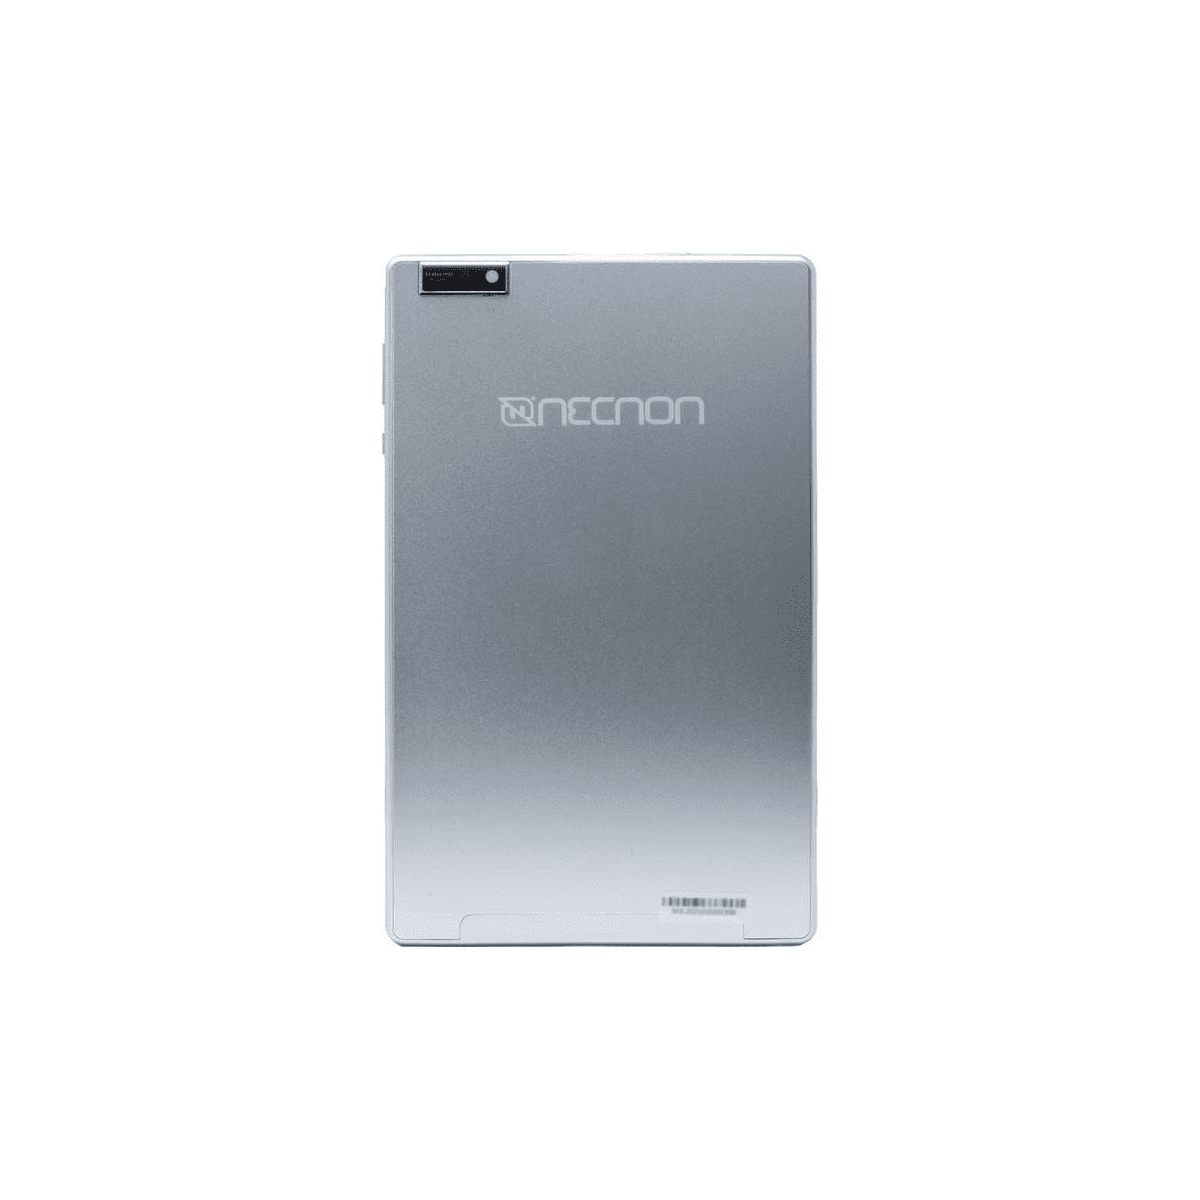 Tablet Necnon 3L-2 9" Hd Quadcore A7 2Gb 32Gb Android 10 Plata